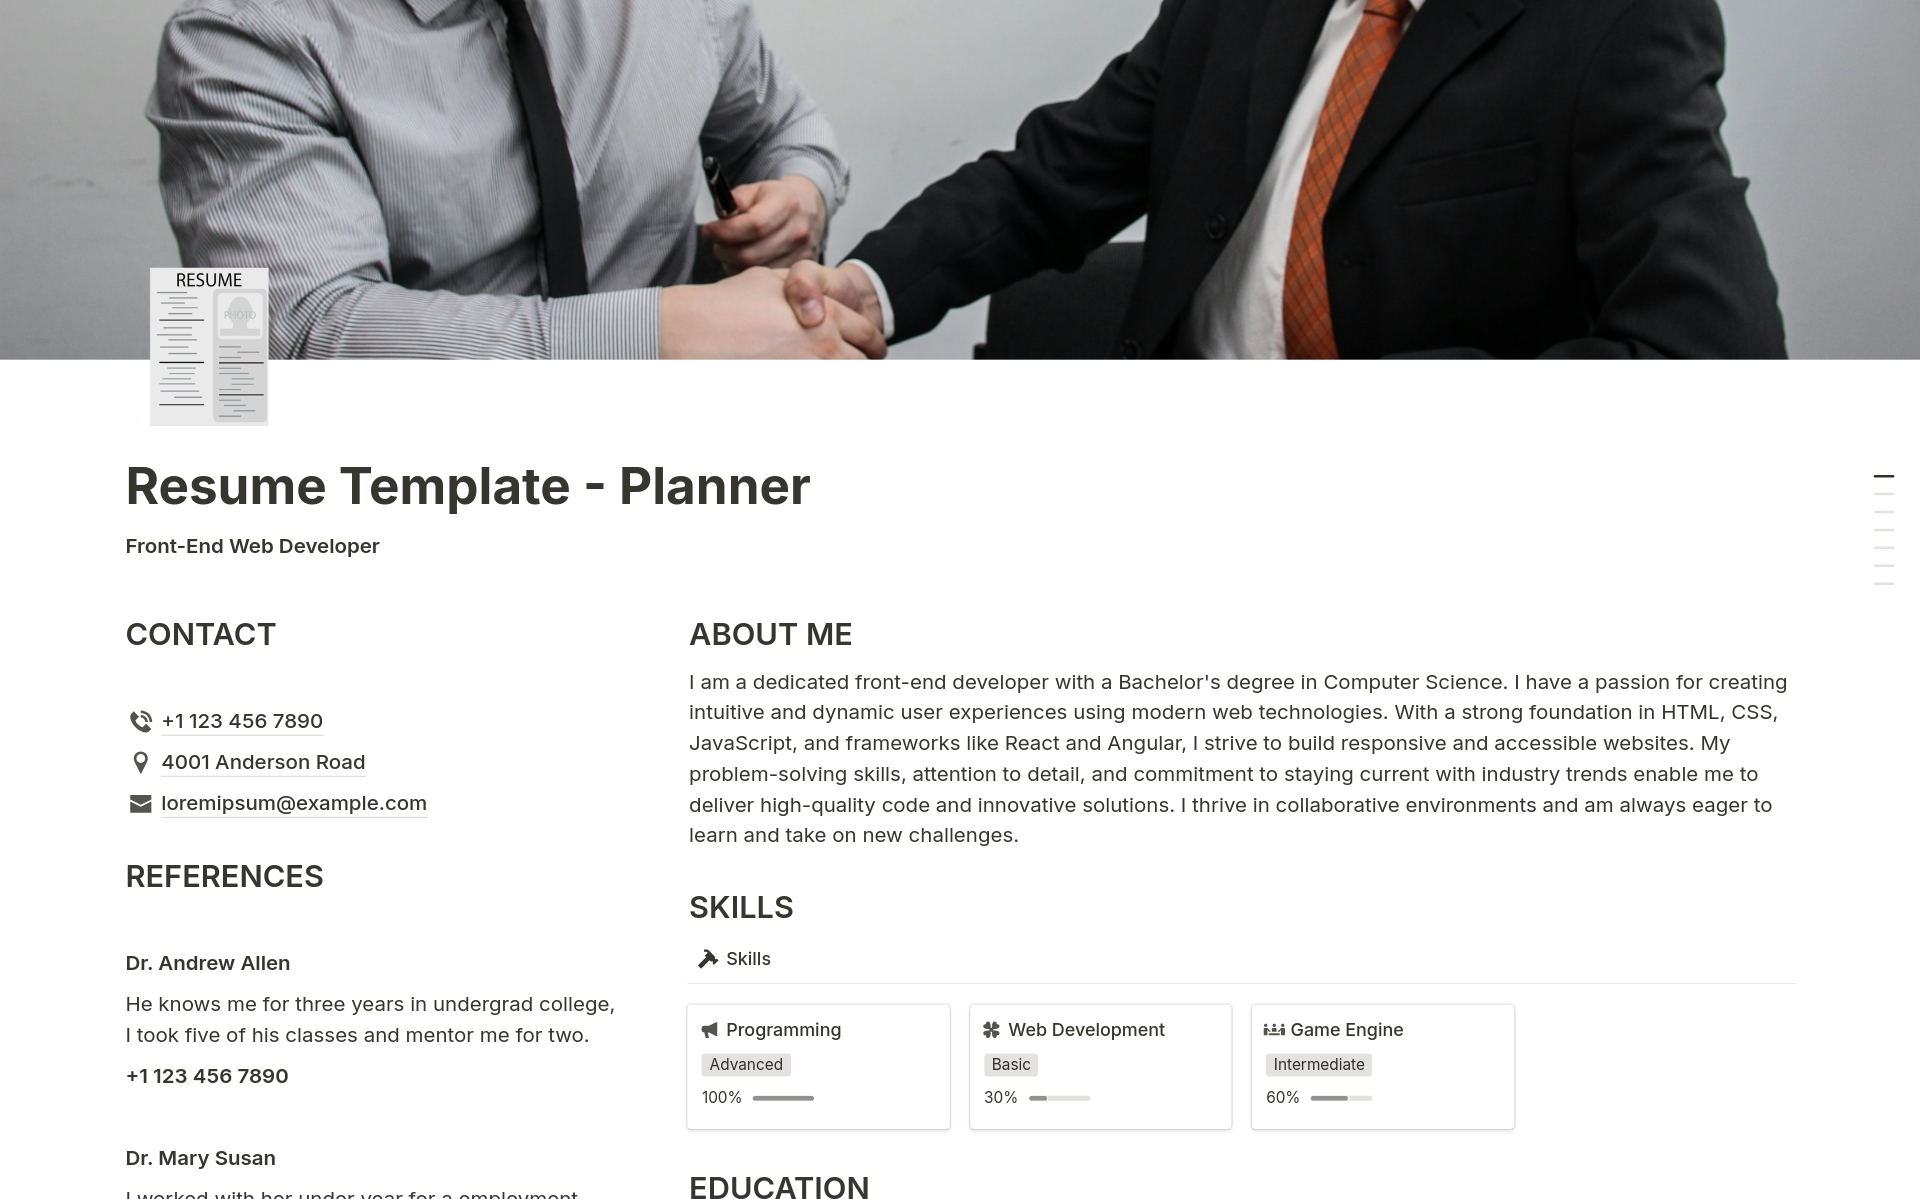 En förhandsgranskning av mallen för Resume - Planner